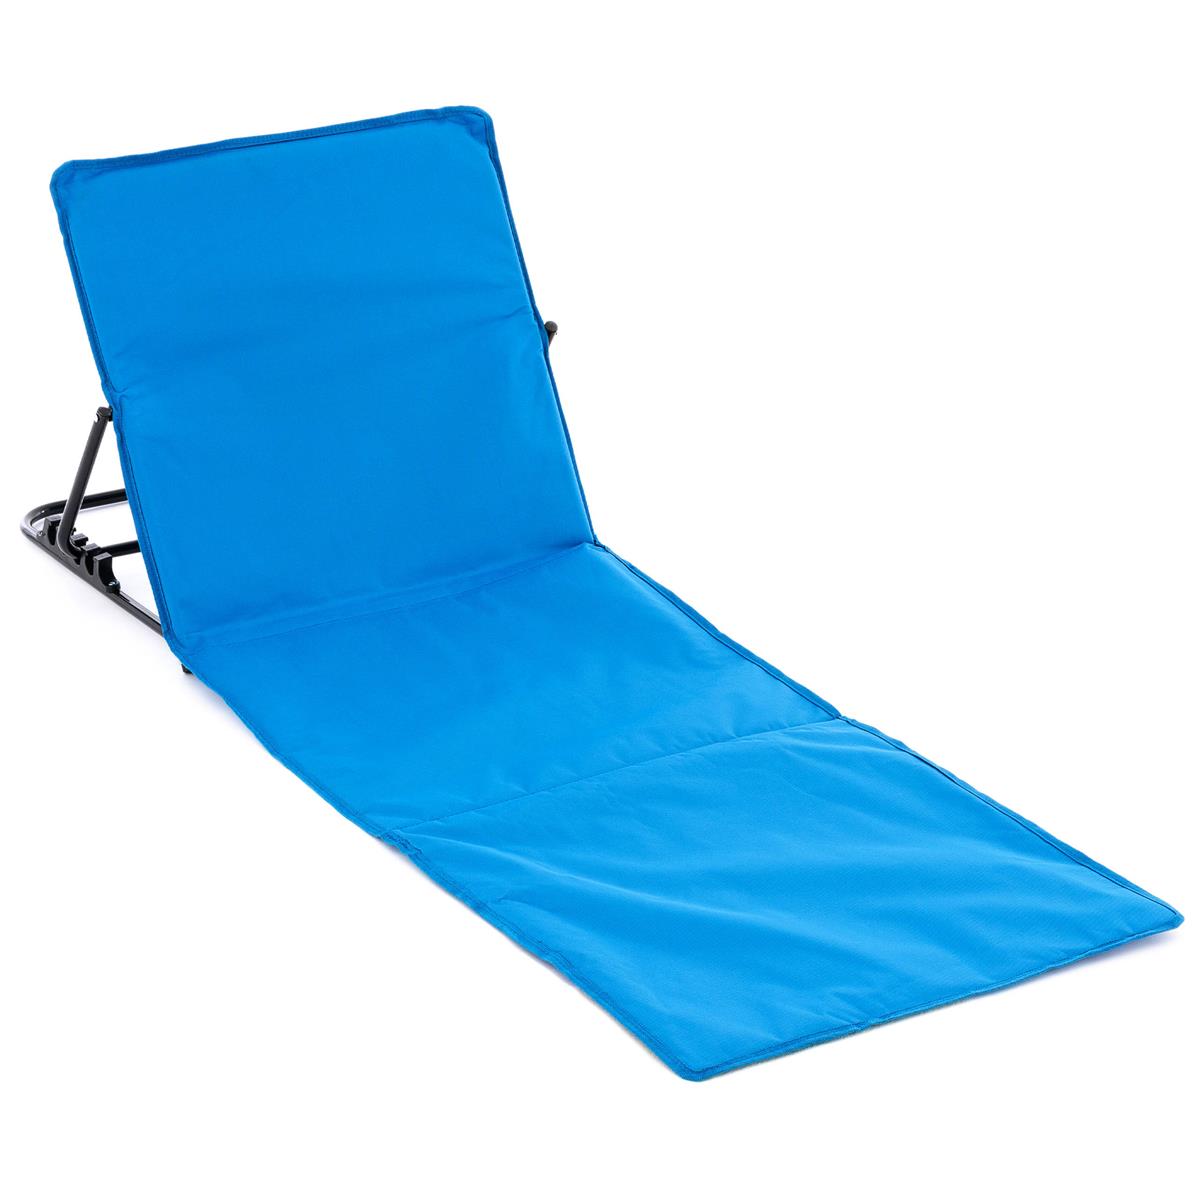 Strandmatte Beachmatte gepolstert faltbar verstellbare Rückenlehne blau